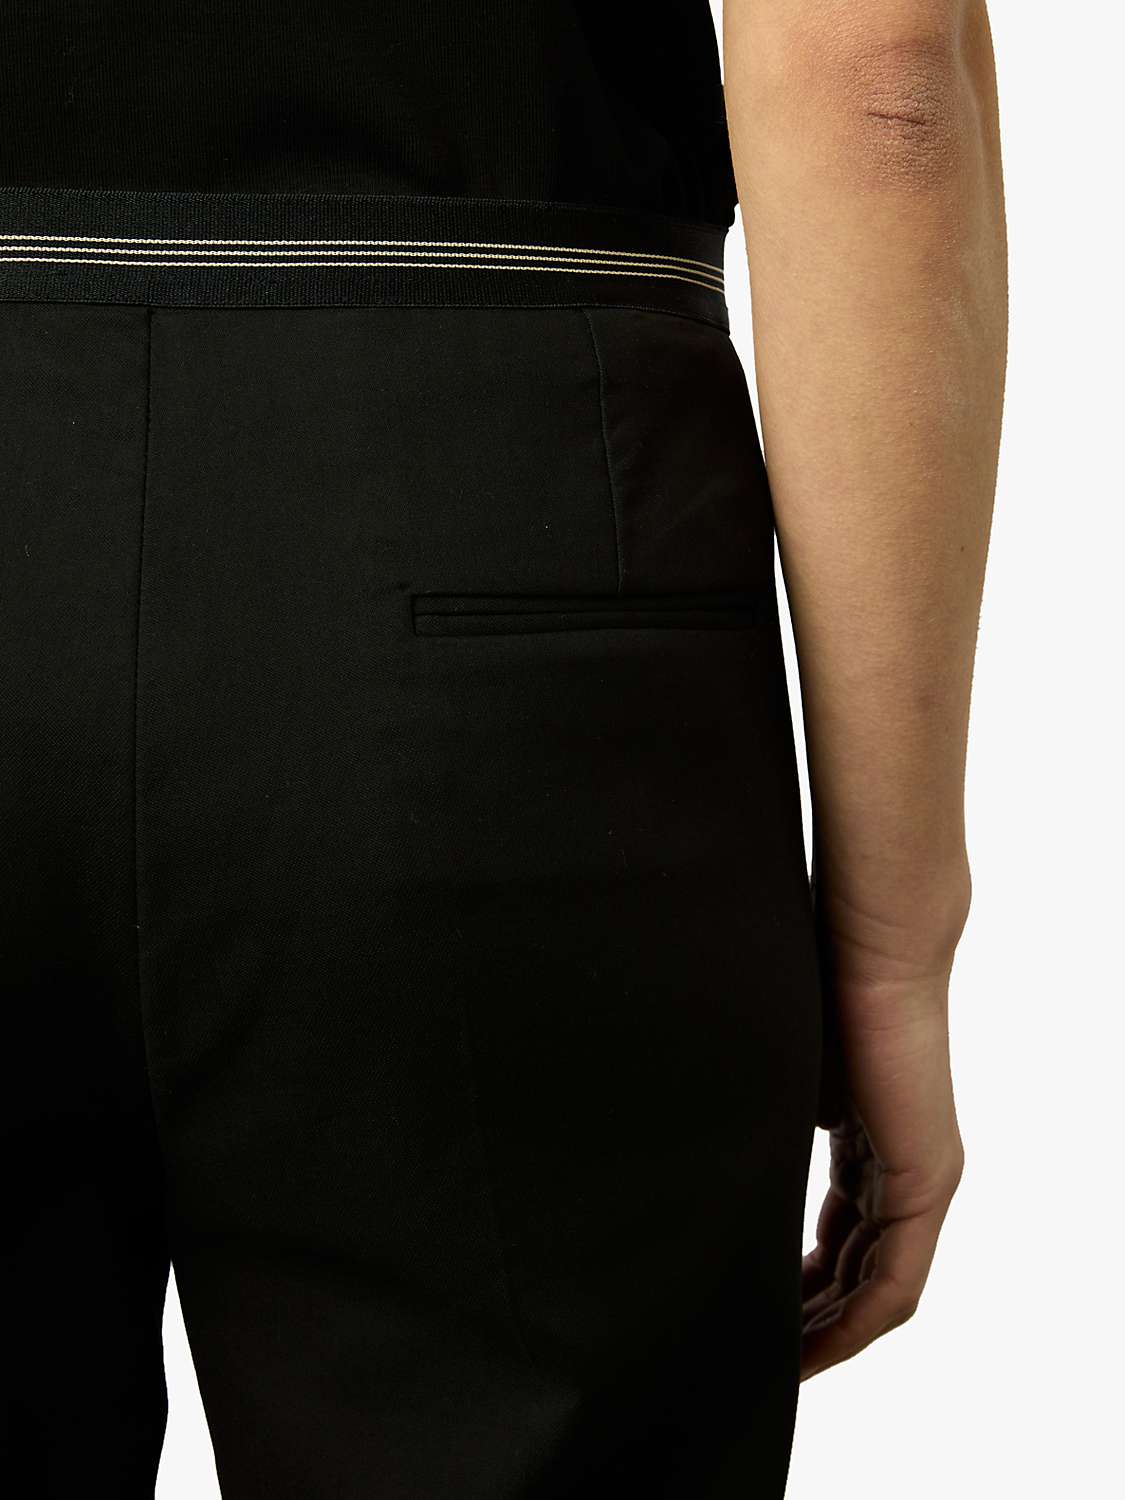 Buy Gerard Darel Causette Slim Leg Trousers Online at johnlewis.com